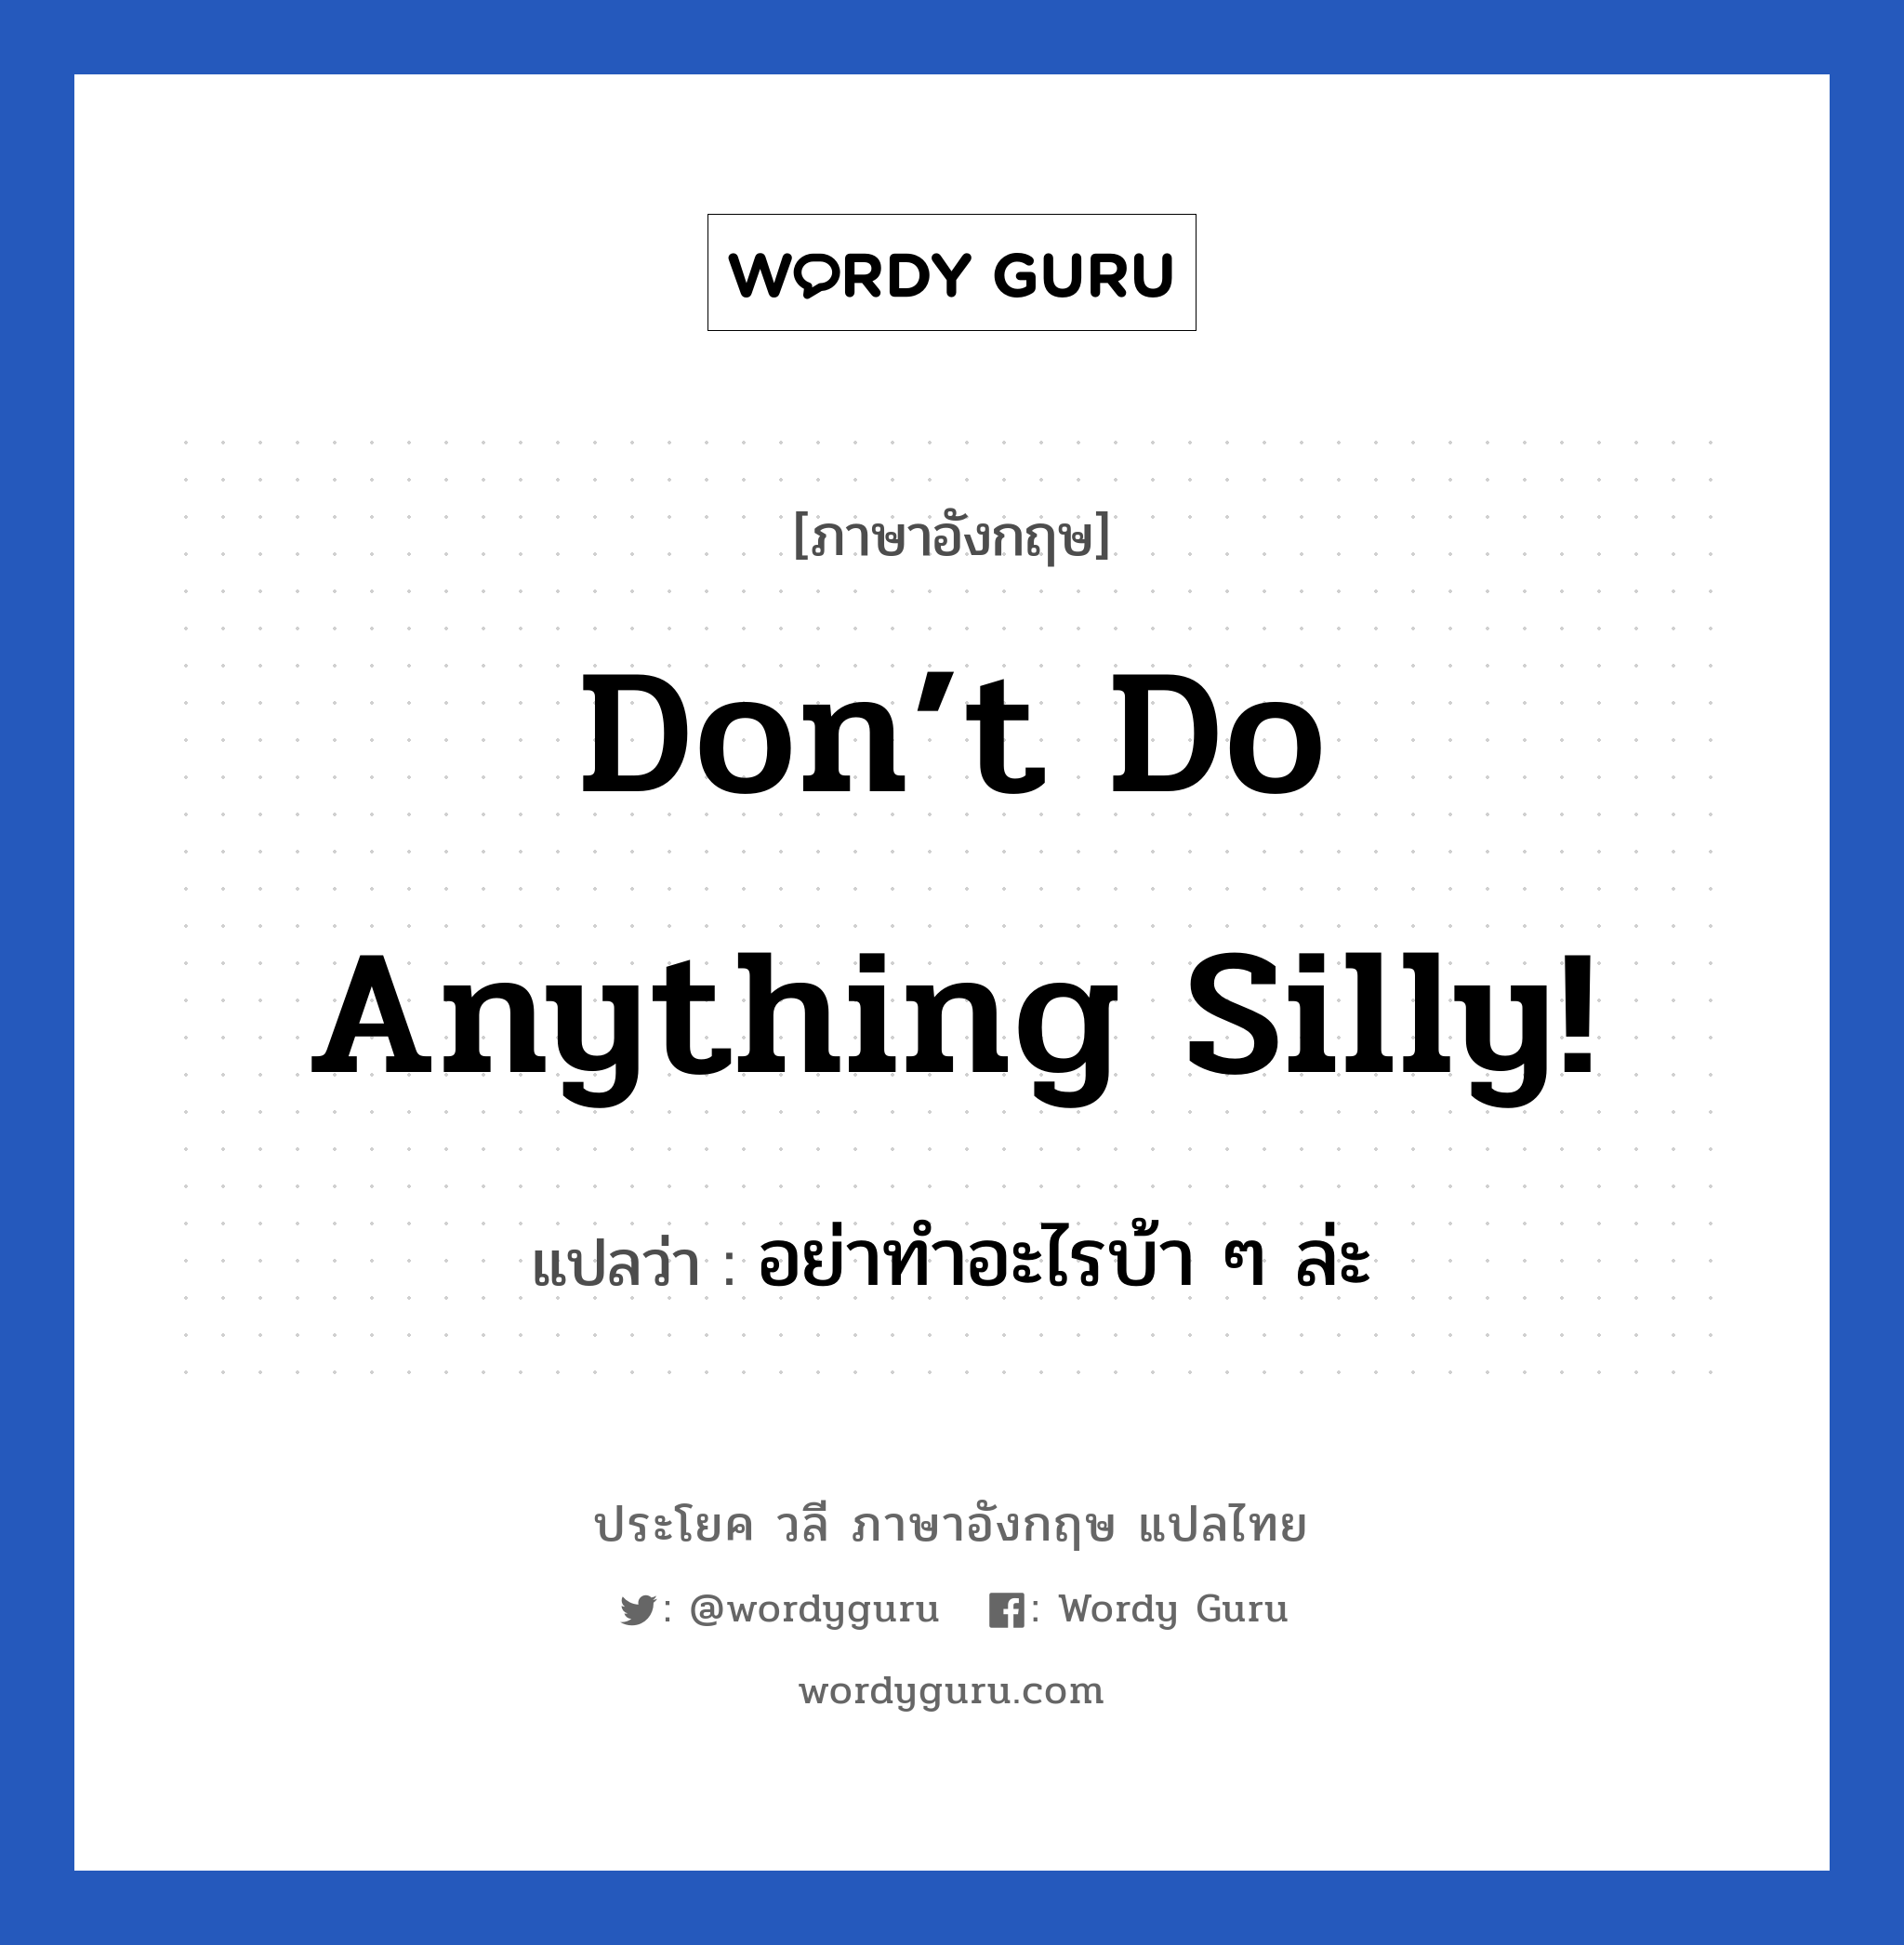 Don’t do anything silly! แปลว่า? เป็นประโยคในกลุ่มประเภท เป็นห่วง, วลีภาษาอังกฤษ Don’t do anything silly! แปลว่า อย่าทำอะไรบ้า ๆ ล่ะ หมวด เป็นห่วง